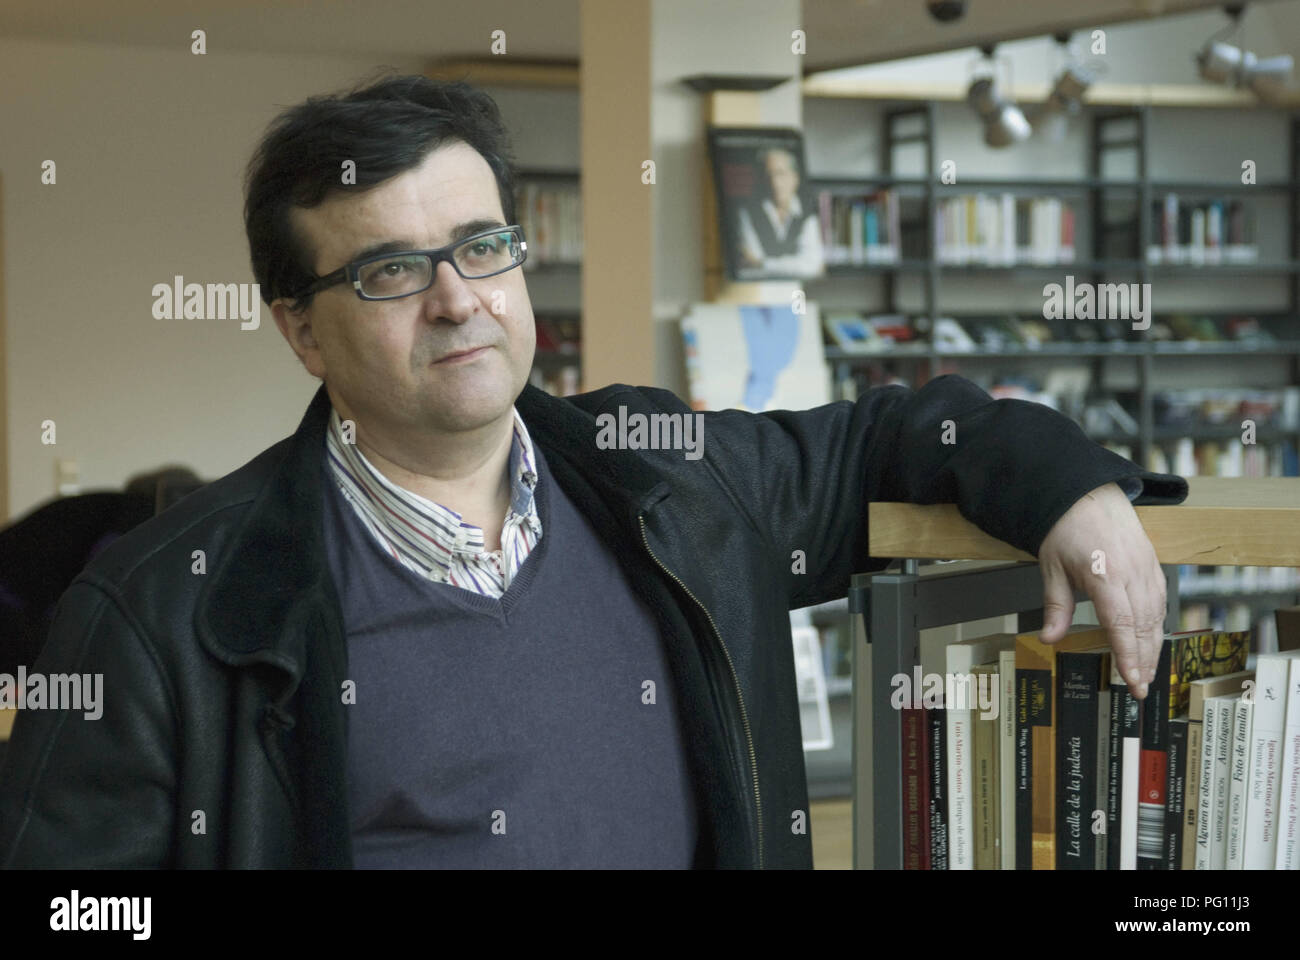 Berlín, 23.02.2011: Retrato de Javier Cercas, escritor, profesor de literatura española en la Universidad de Girona y autor Foto de stock